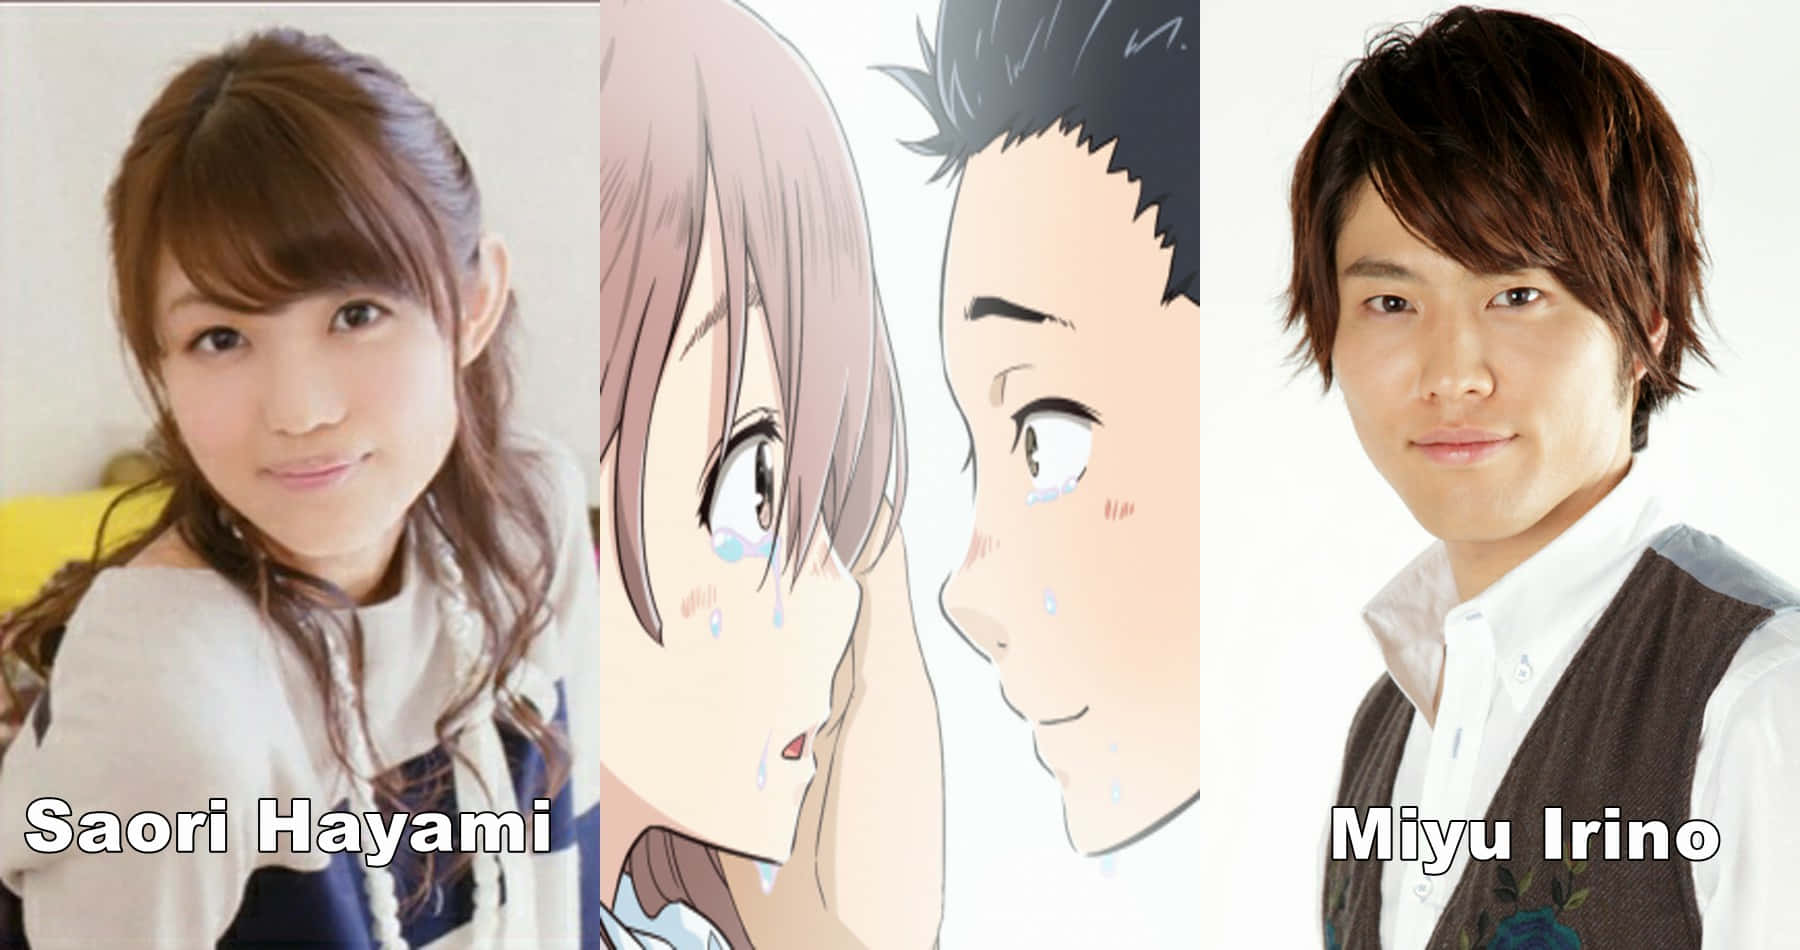 Einegruppe Von Anime-charakteren Mit Ihren Gesichtern.